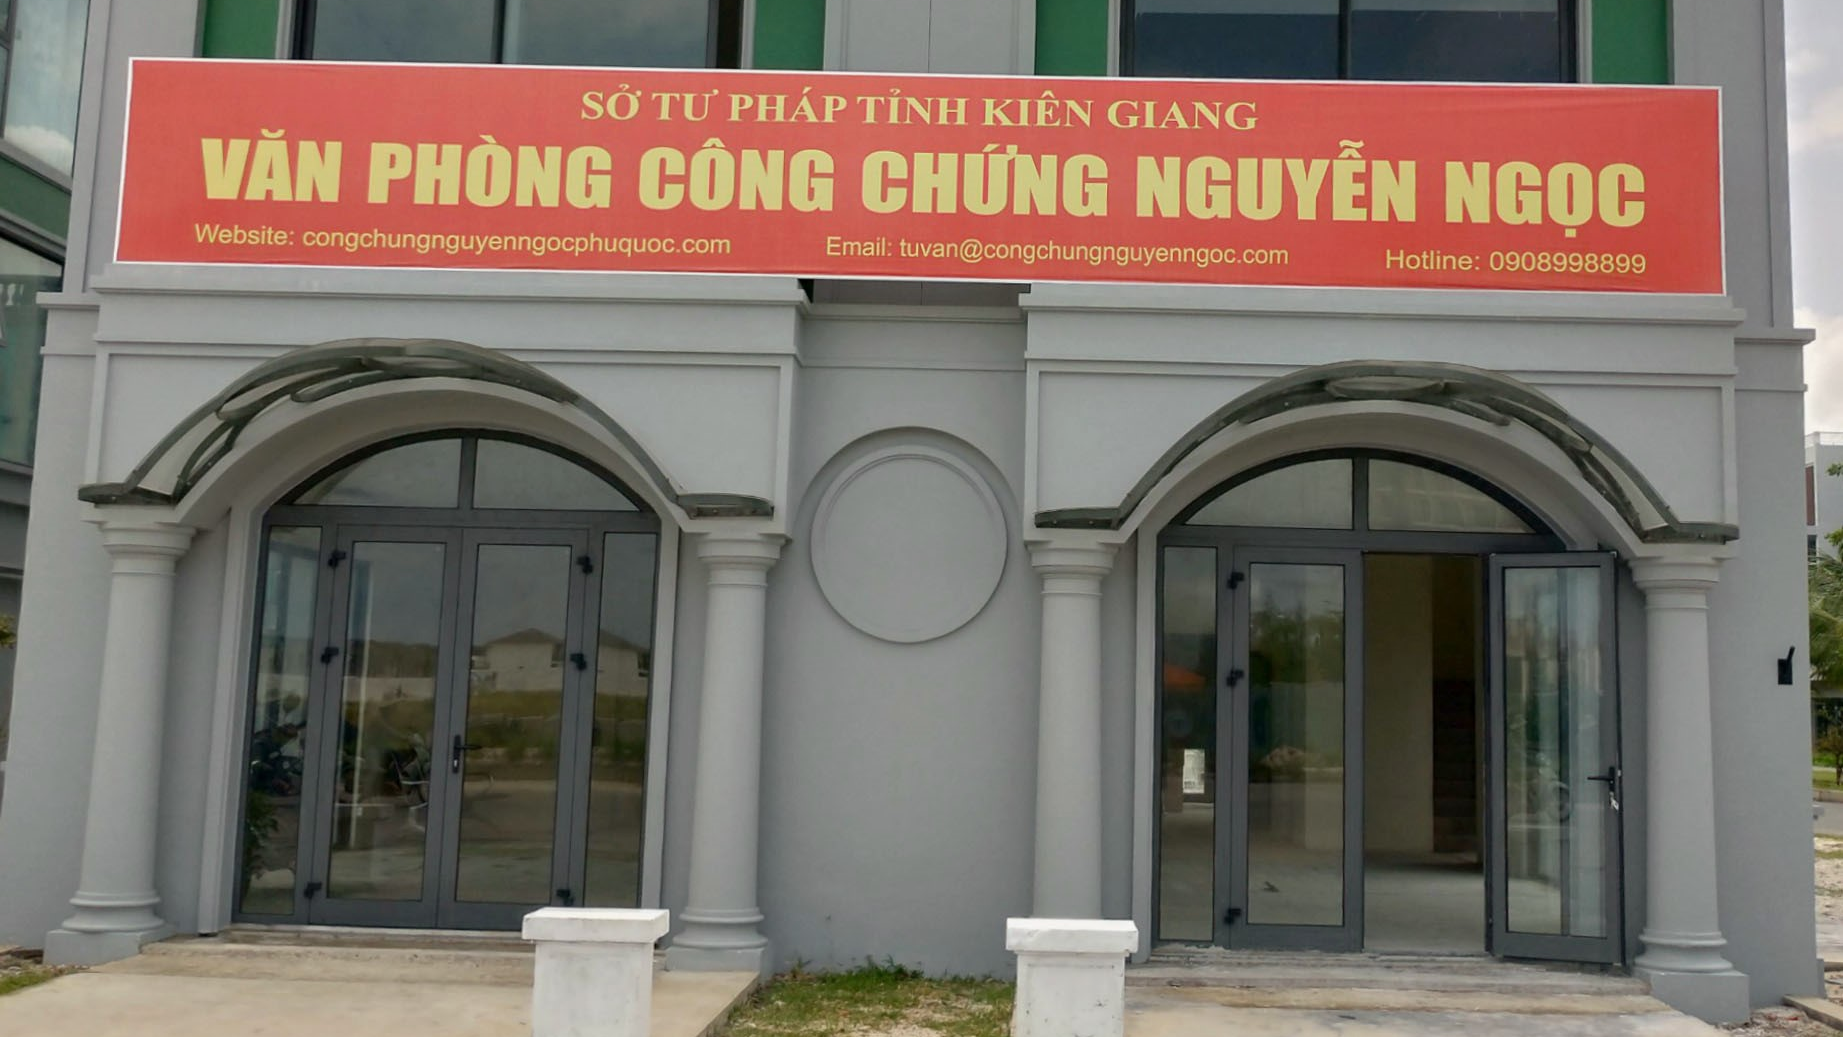 Văn phòng công chứng Nguyễn Ngọc